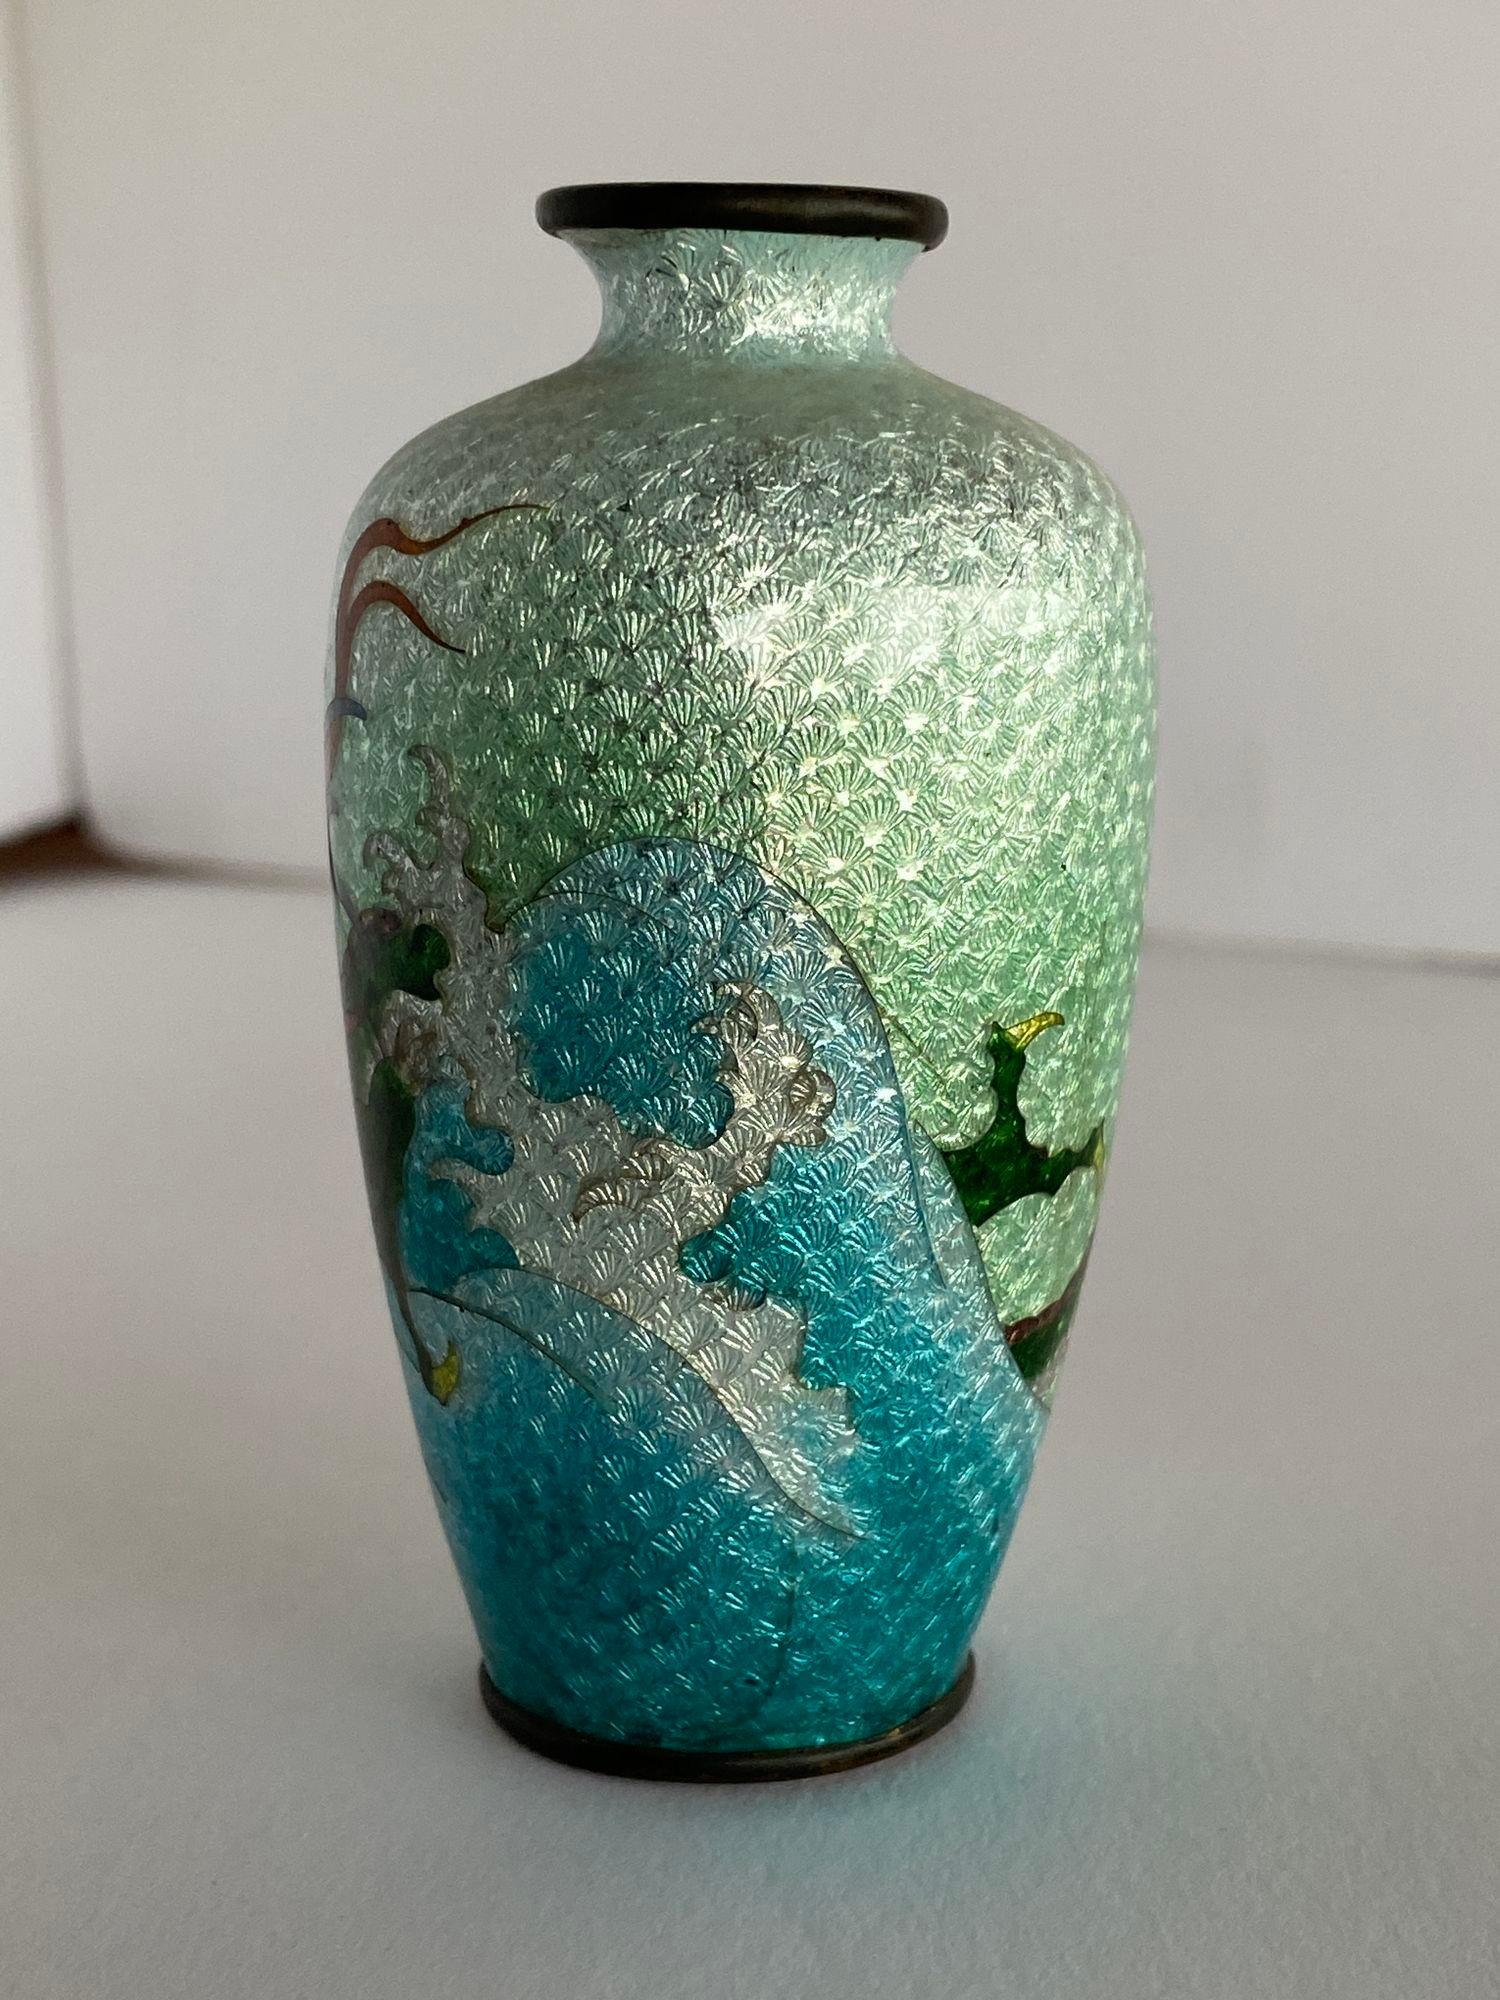 Vase cloisonné japonais en laiton d'après-guerre représentant un dragon volant dans le ciel.
 
 
Crica 1900
les dimensions sont de 4.25